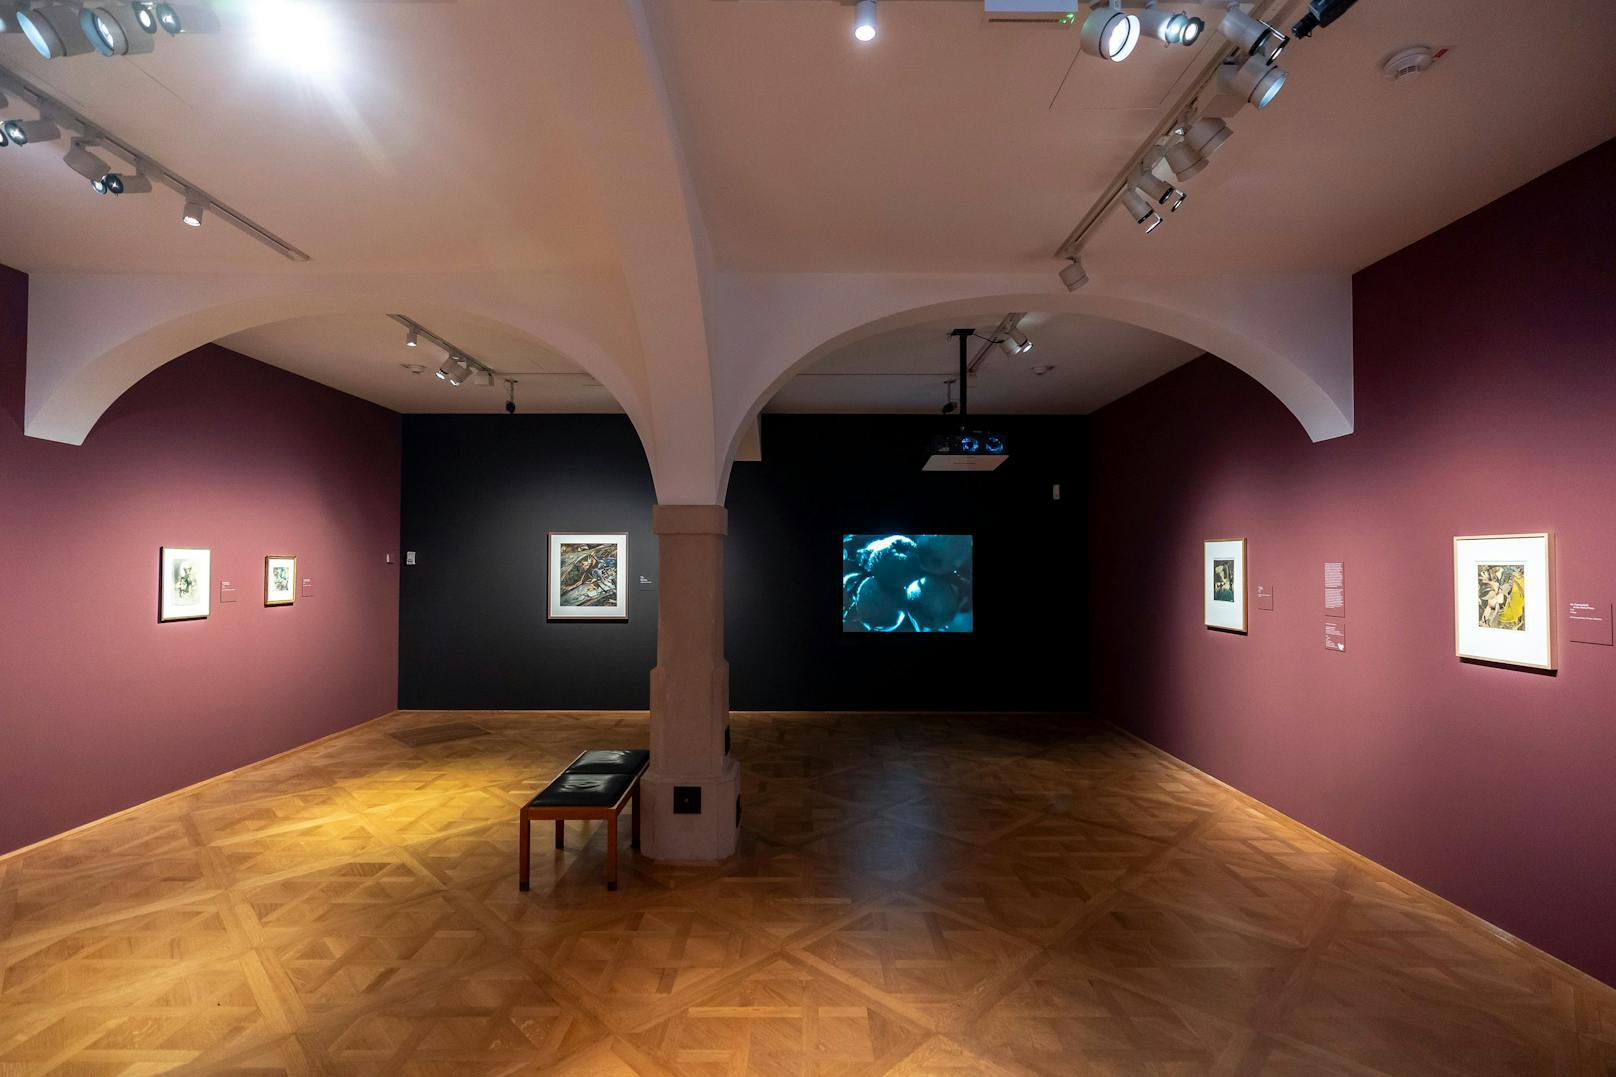 Ausstellungsraum der Ausstellung "Montierte Welten" im Belvedere.